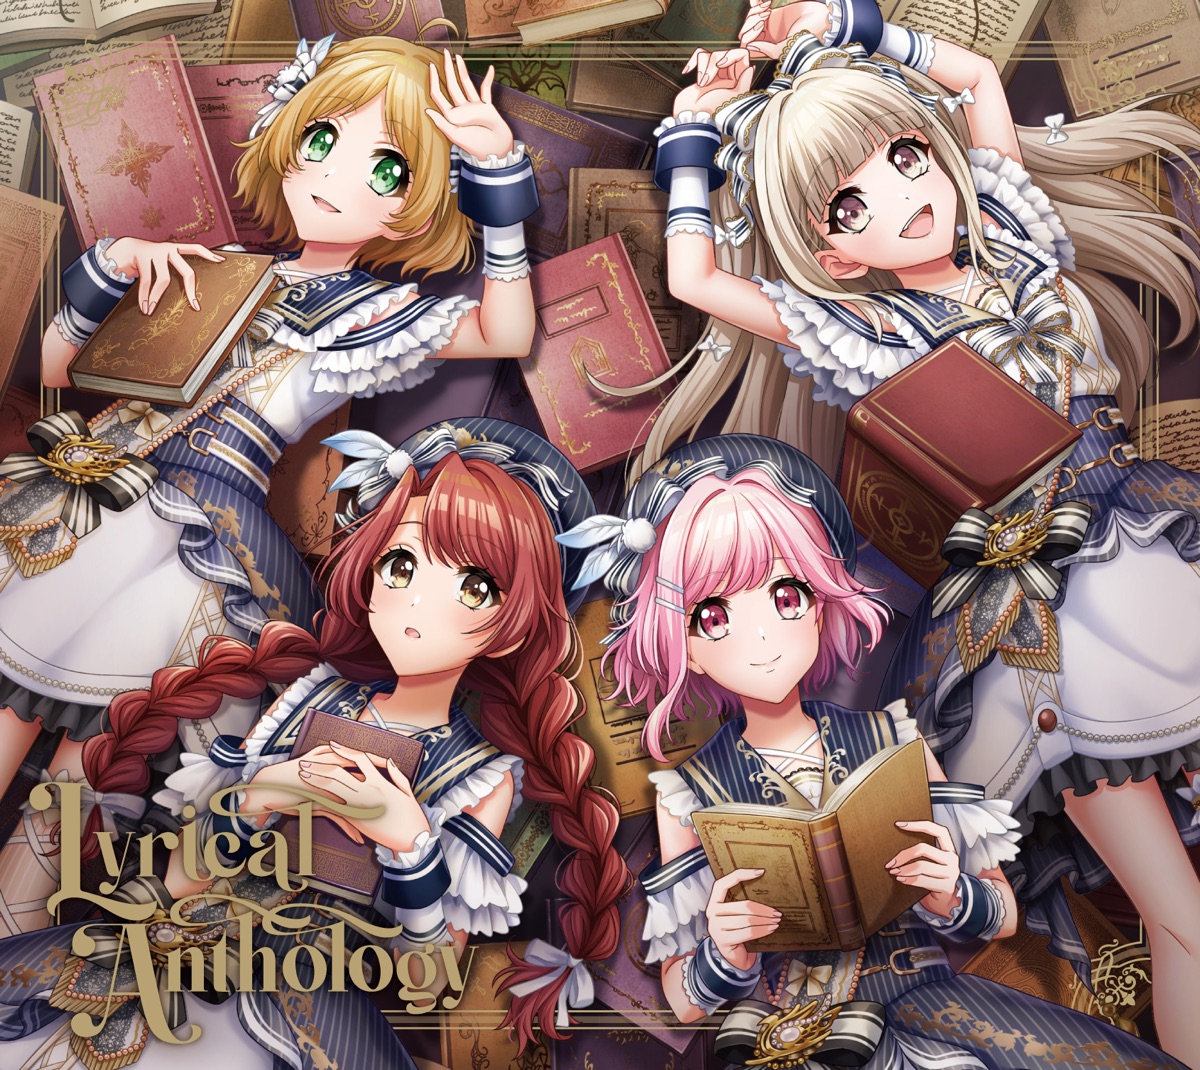 Lyrical Anthology - Lyrical Lilyのアルバム - Apple Music